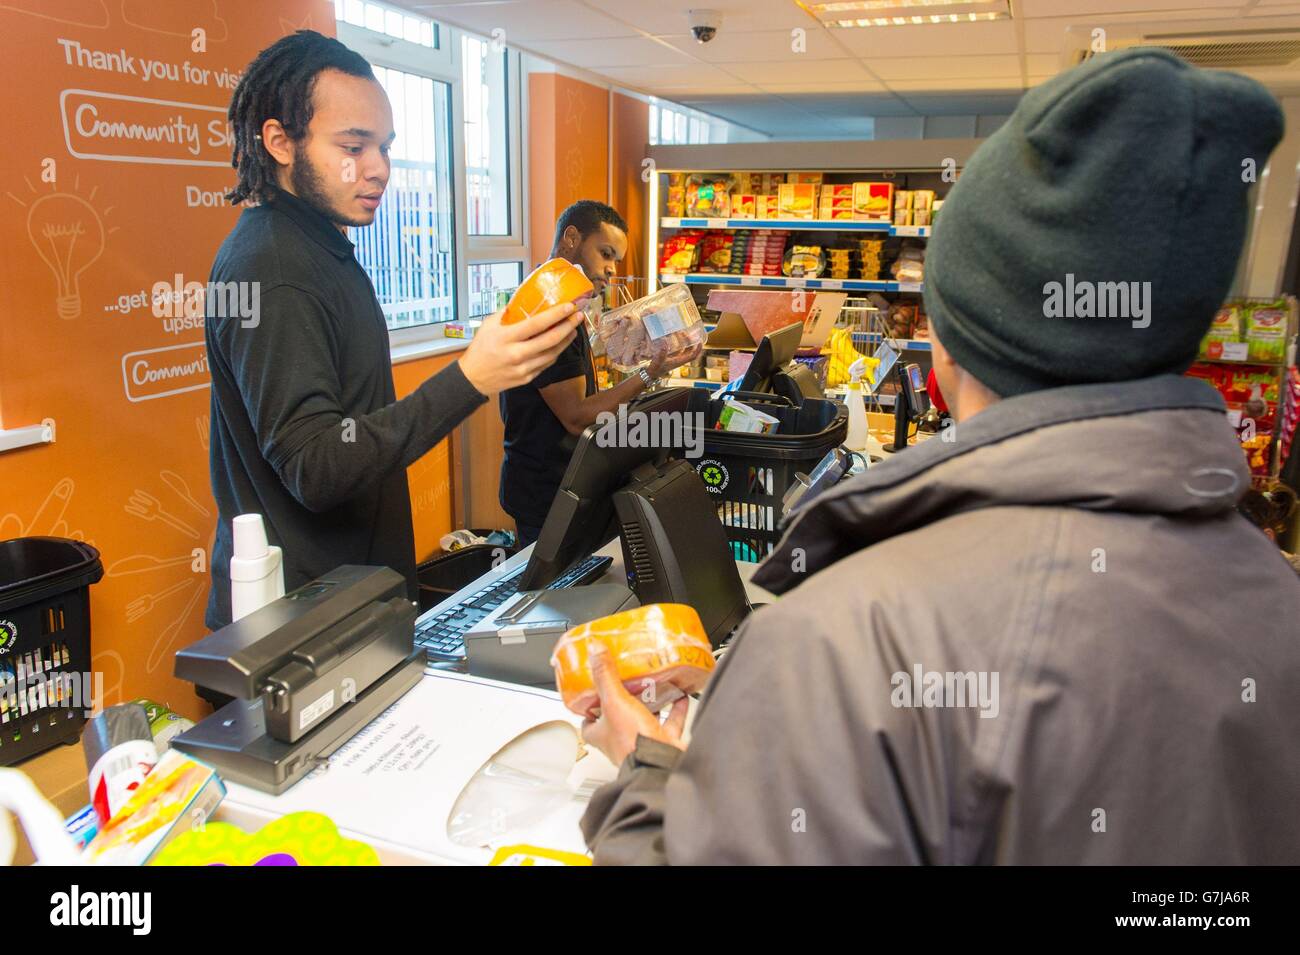 Der Gemeinschafts-Supermarkt verkauft überschüssige Lebensmittel. Mitarbeiter betreuen Kunden im Community Supermarket im Westen von Norwood im Süden Londons. Stockfoto